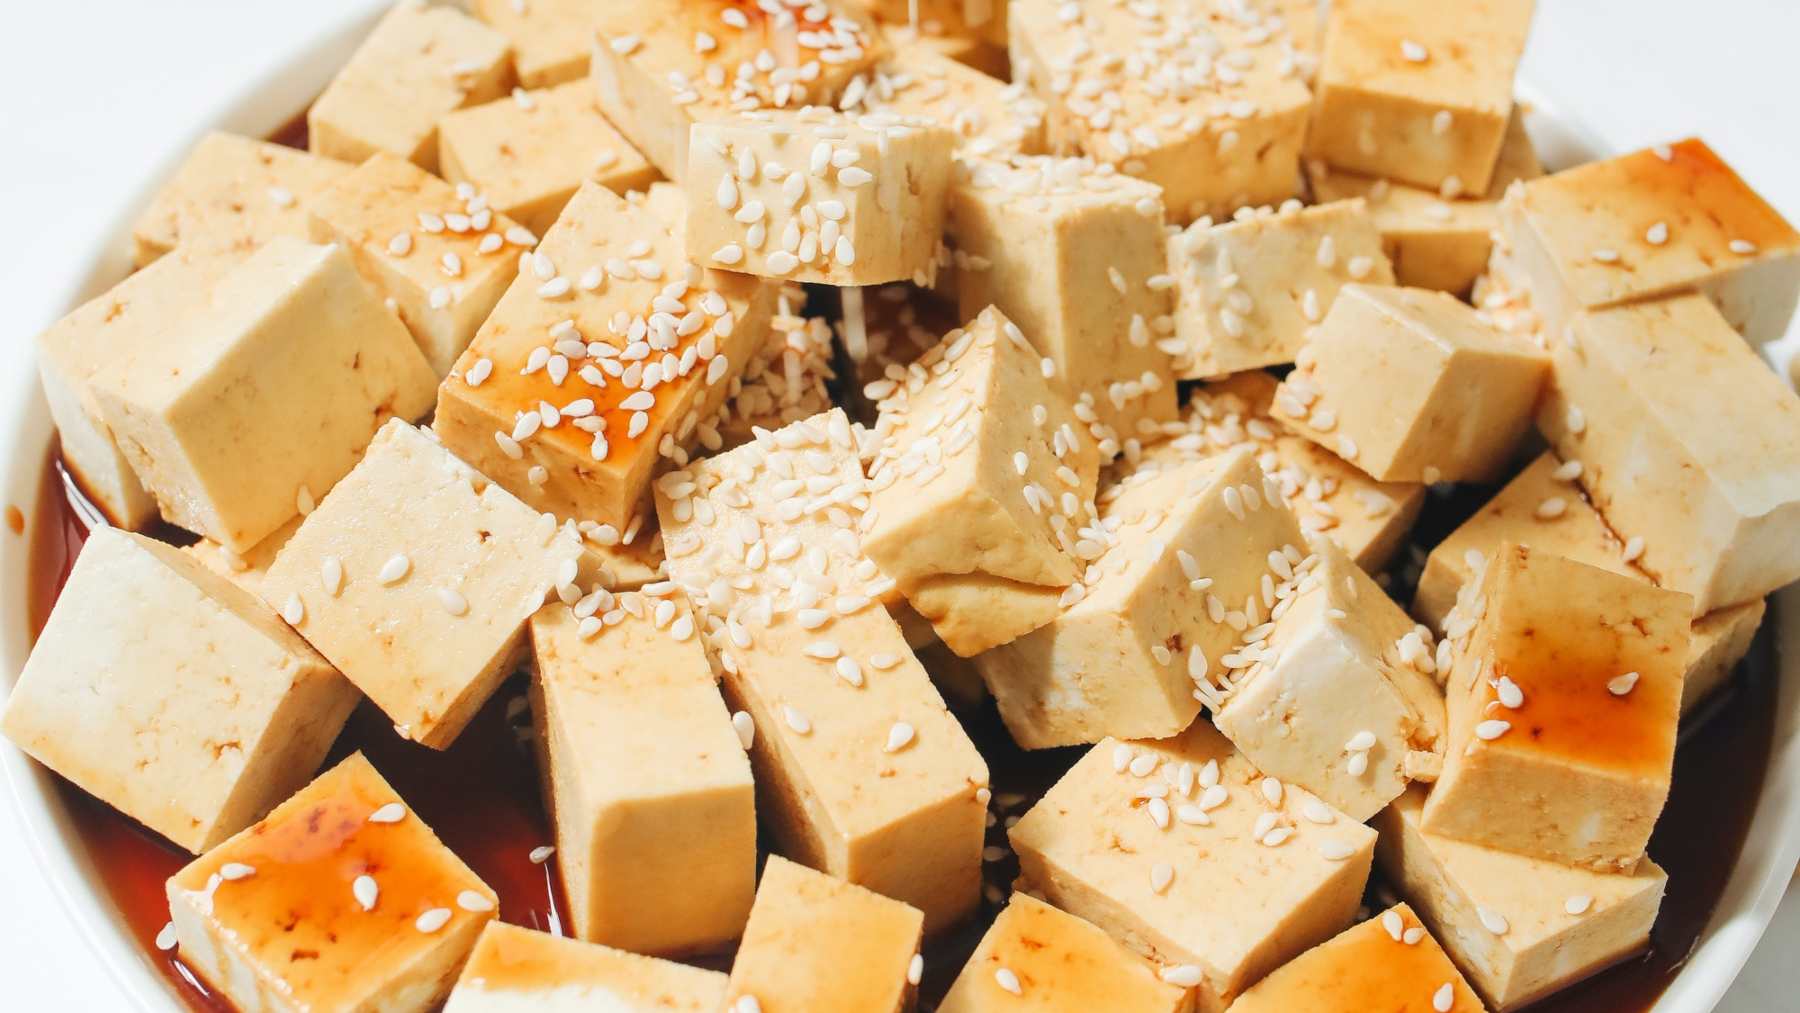 Receta de Tofu: Cómo hacer queso de soja casero